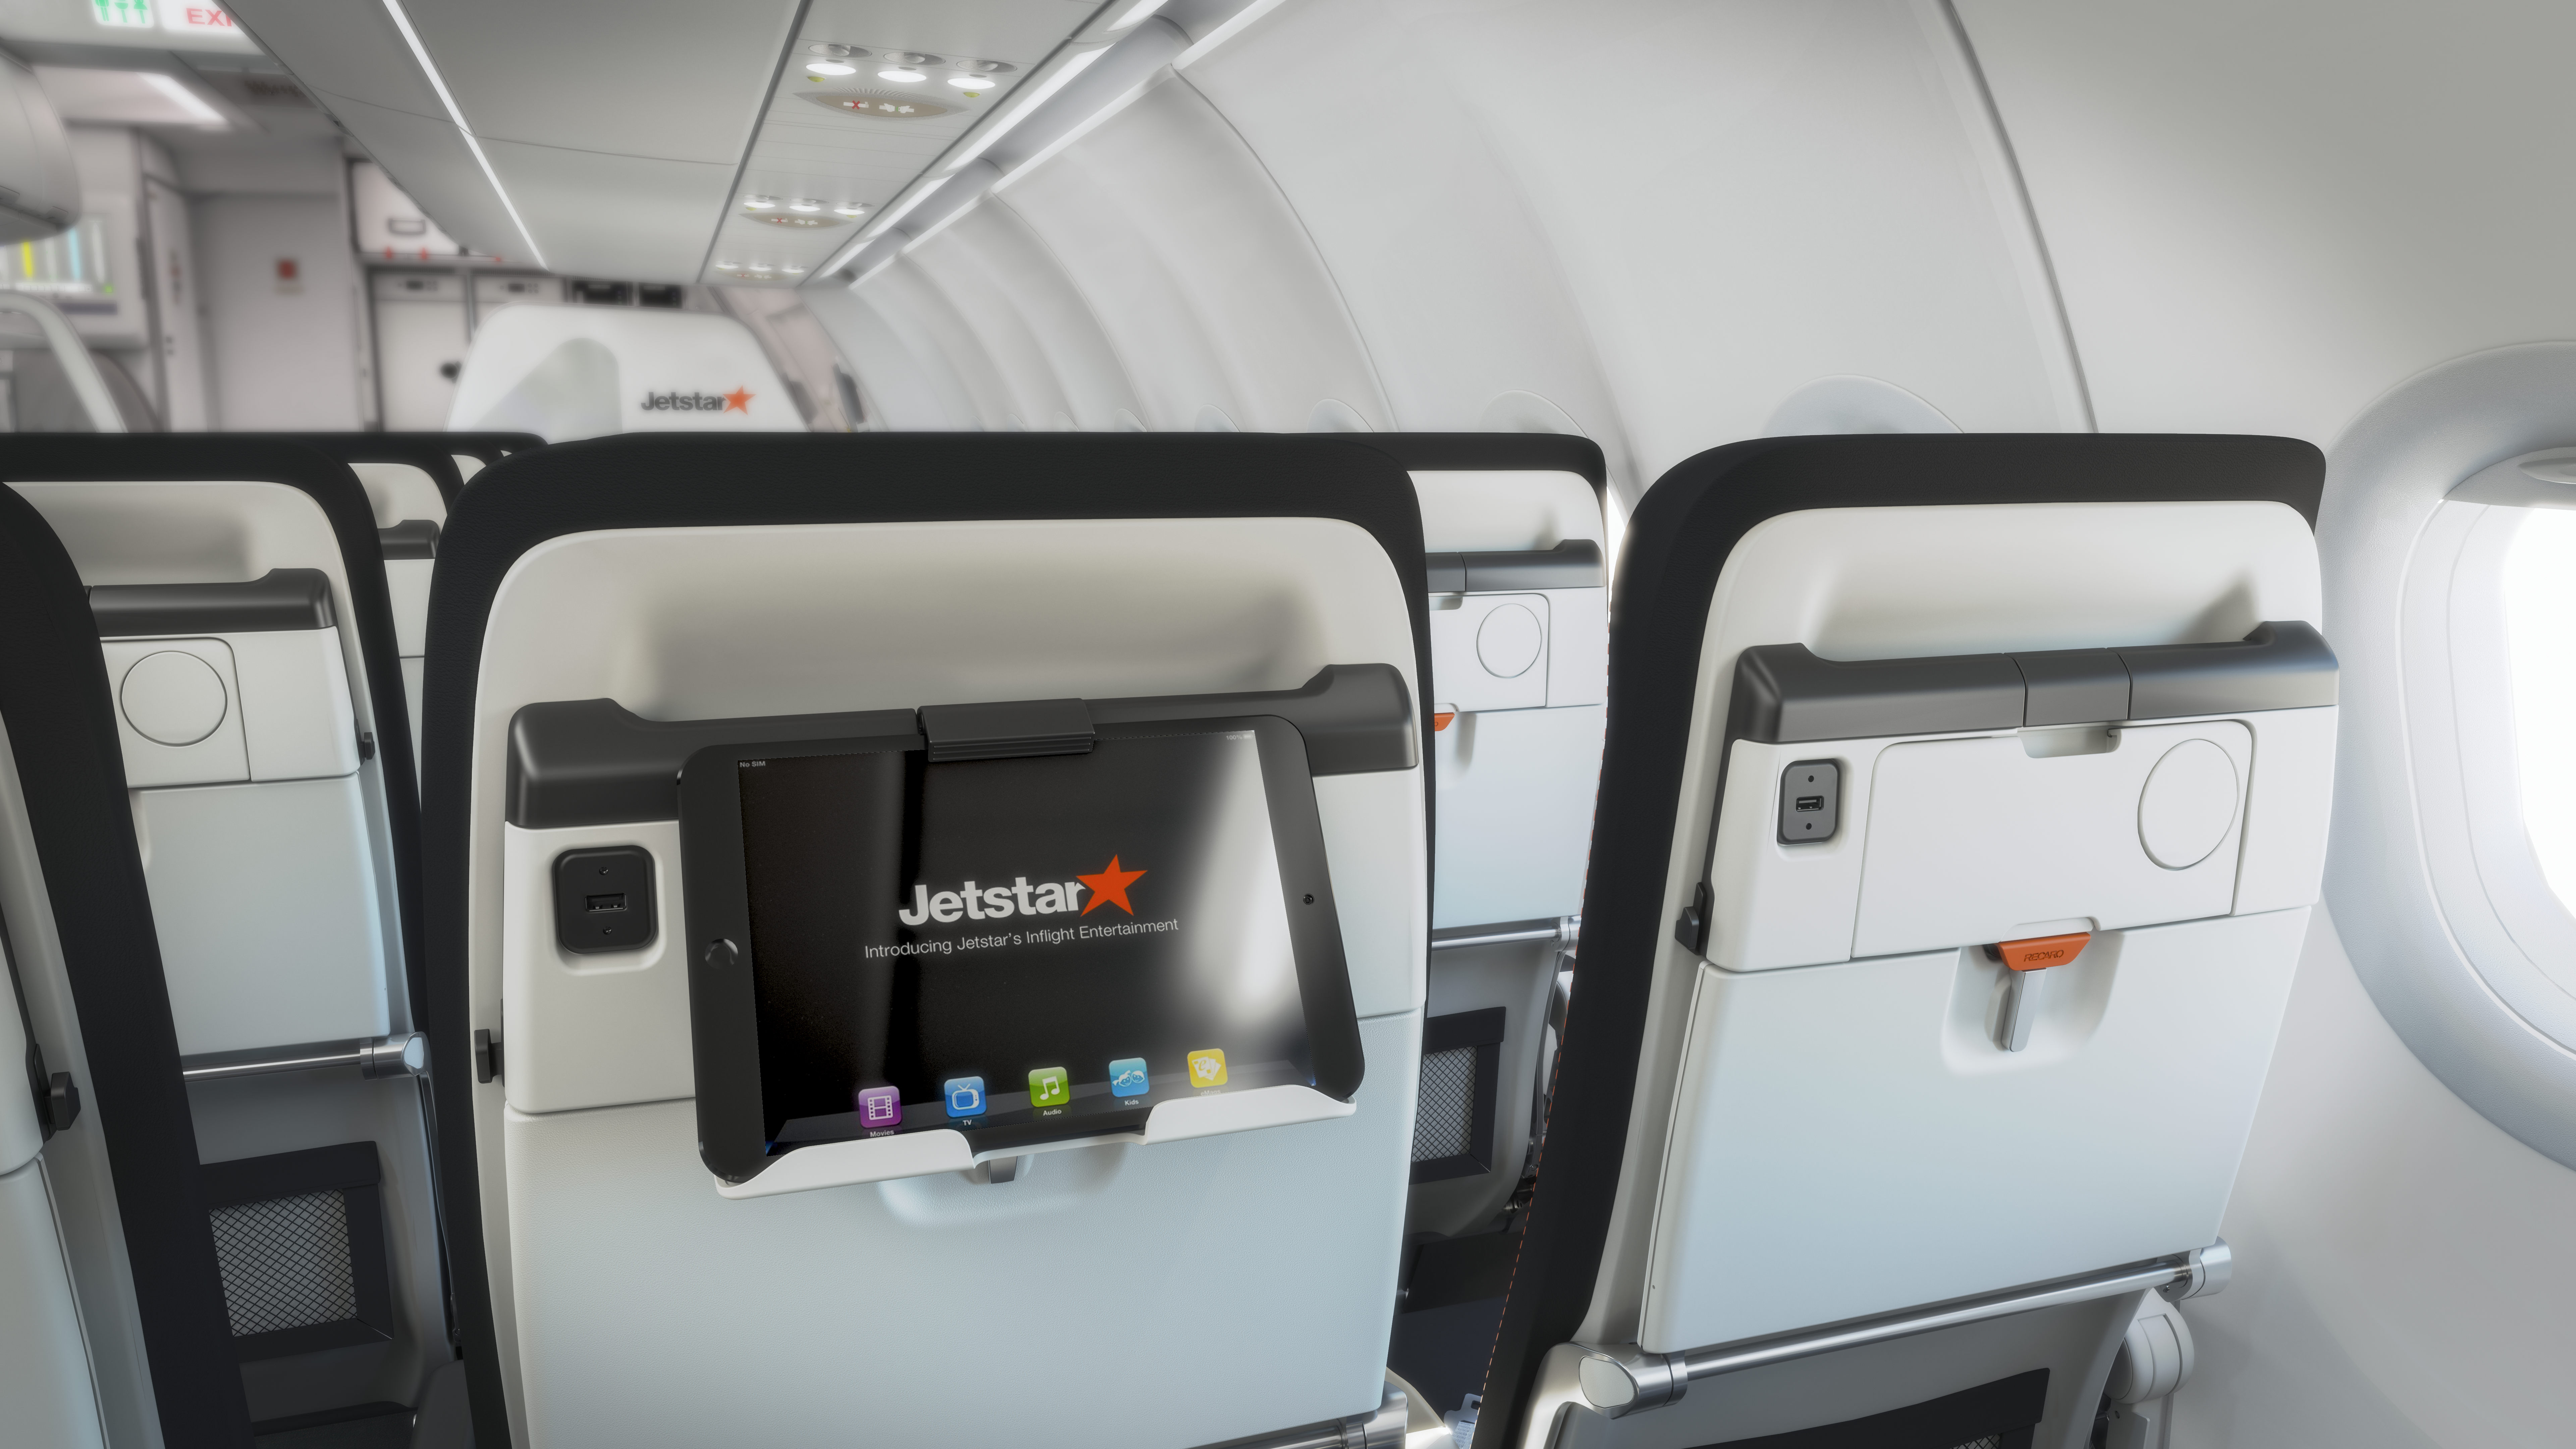 Jetstar A321neo LR Cabin 3 Jetstar